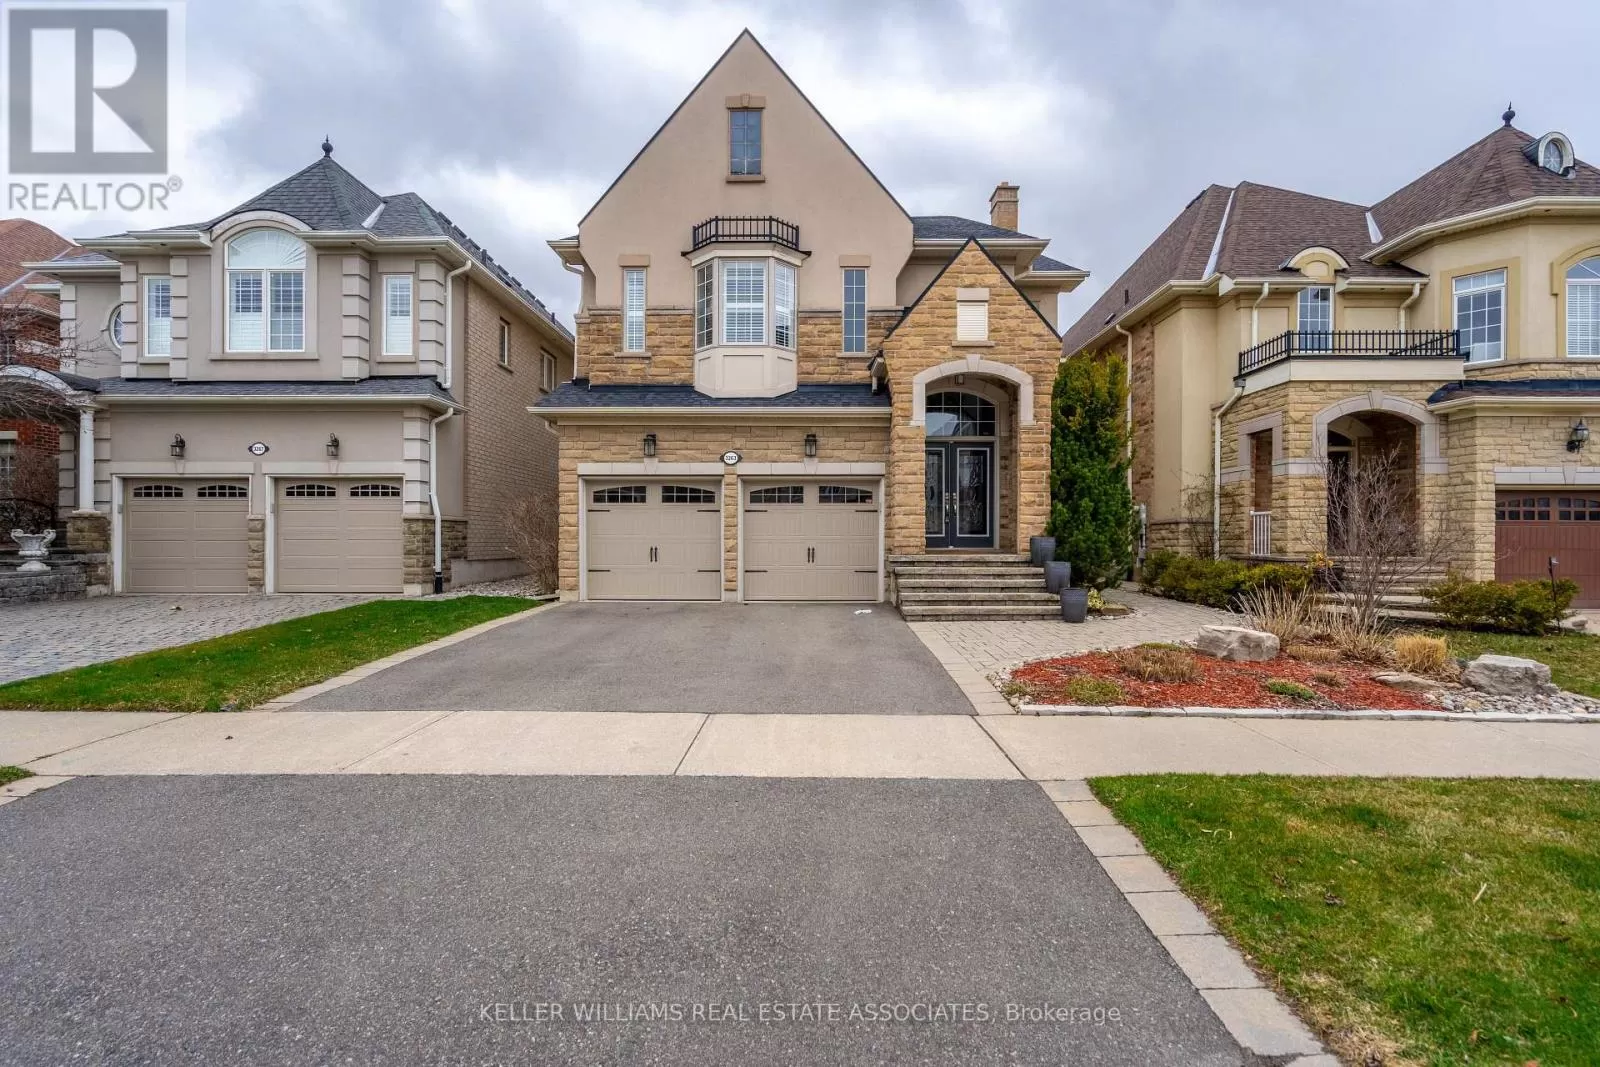 House for rent: 3263 Pringle Pl, Mississauga, Ontario L5M 7V7